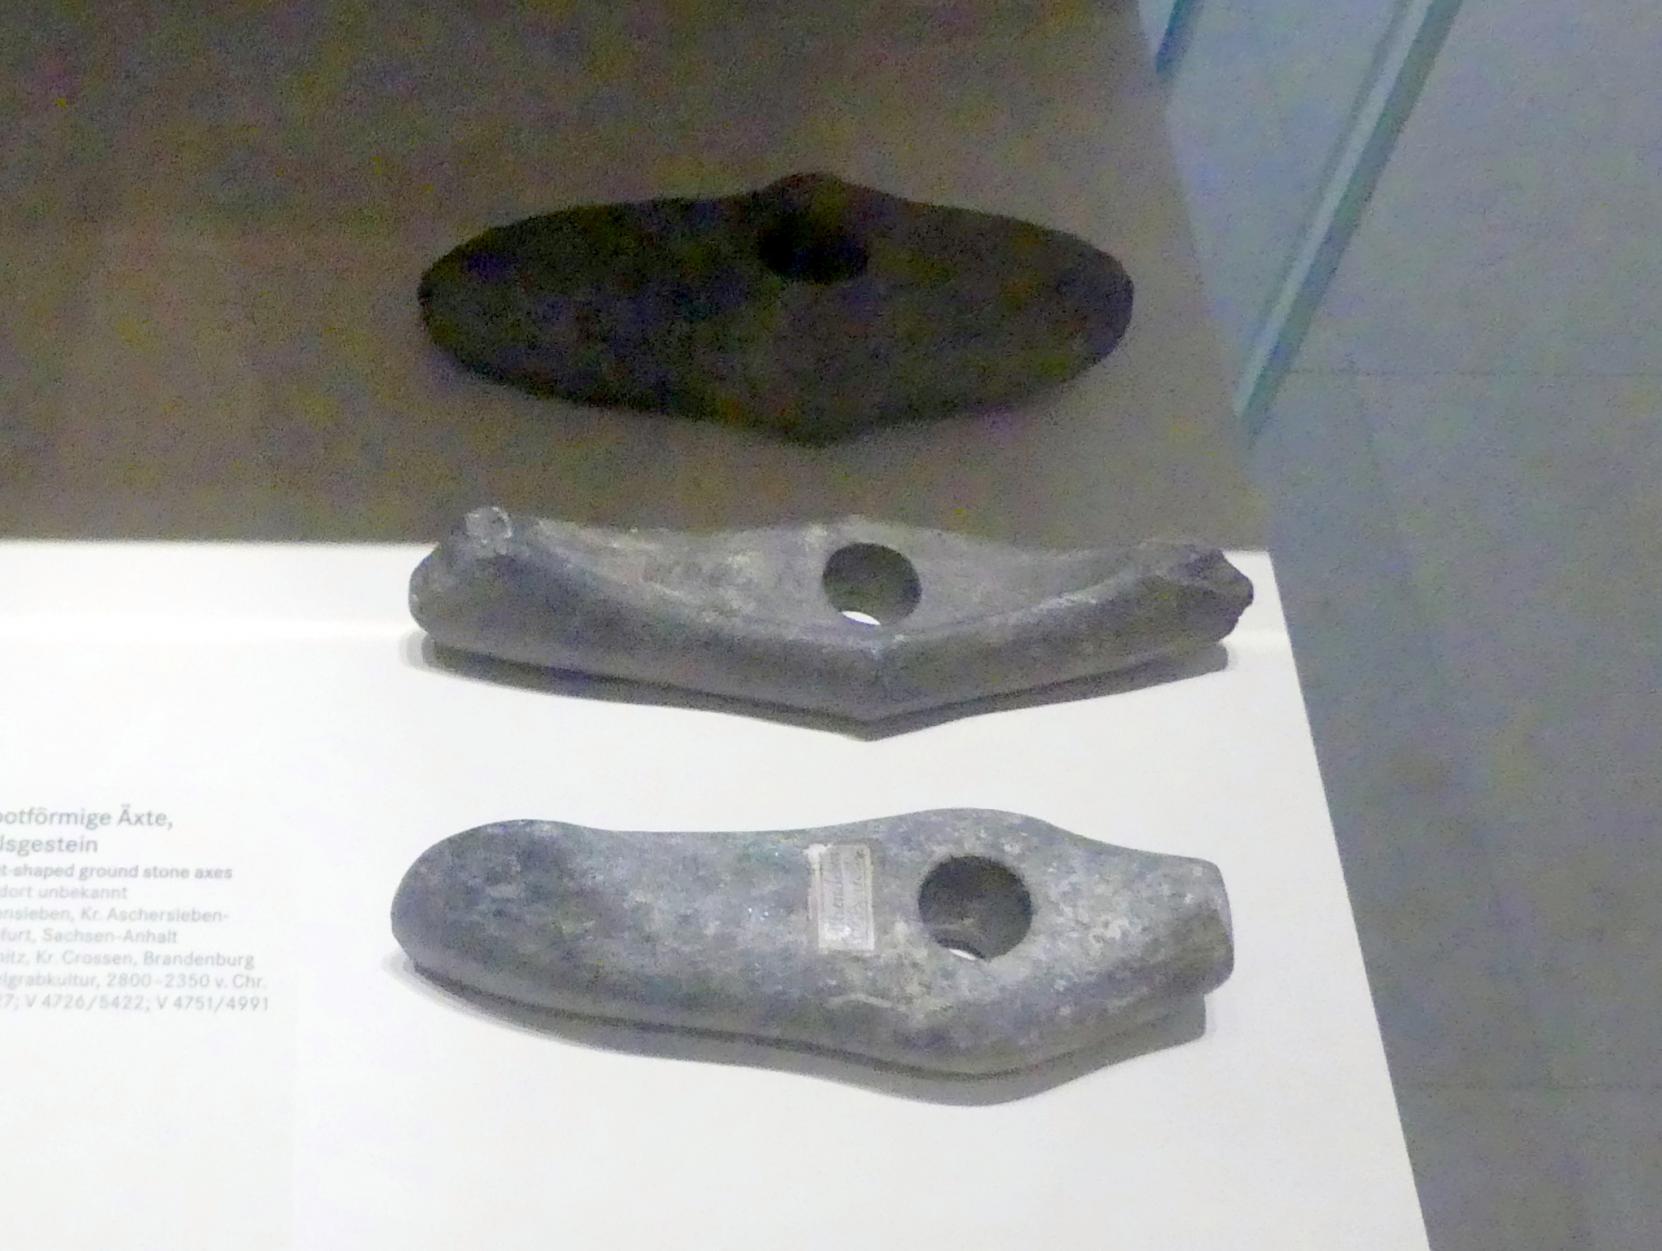 Bootförmige Axt, Nordisches Neolithikum, 4400 - 2350 v. Chr., 2800 - 2350 v. Chr.